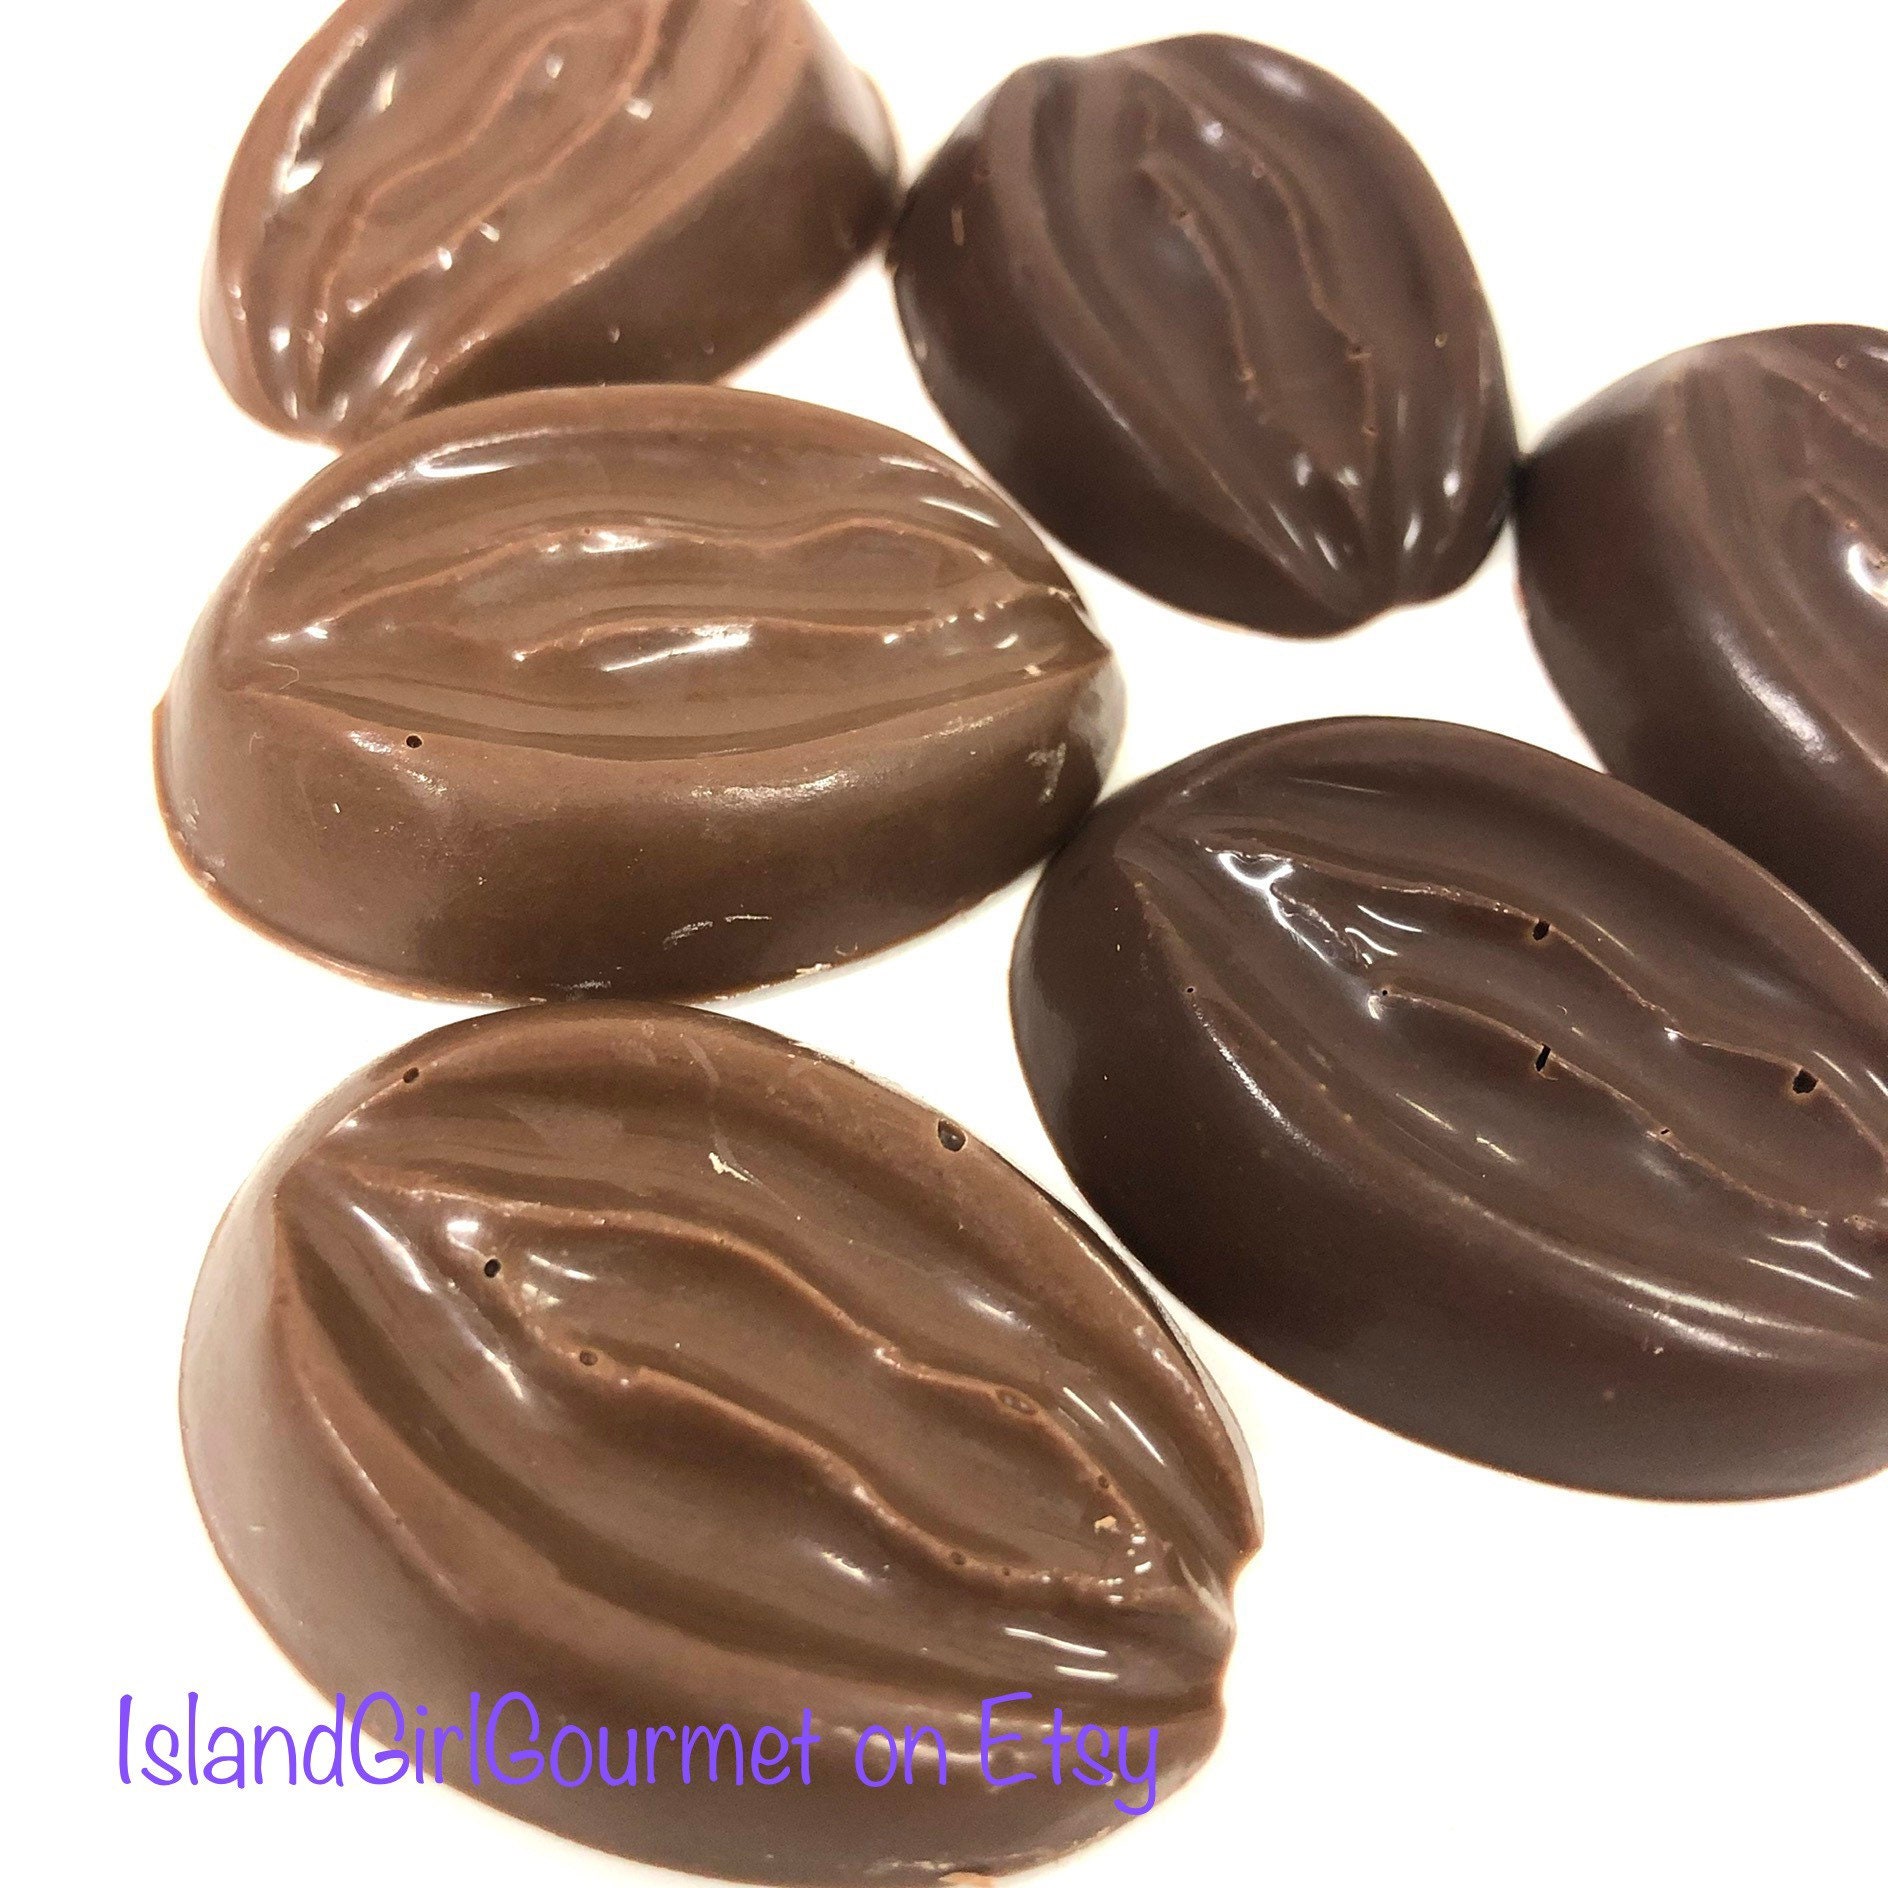 Chocolate anus -  Canada